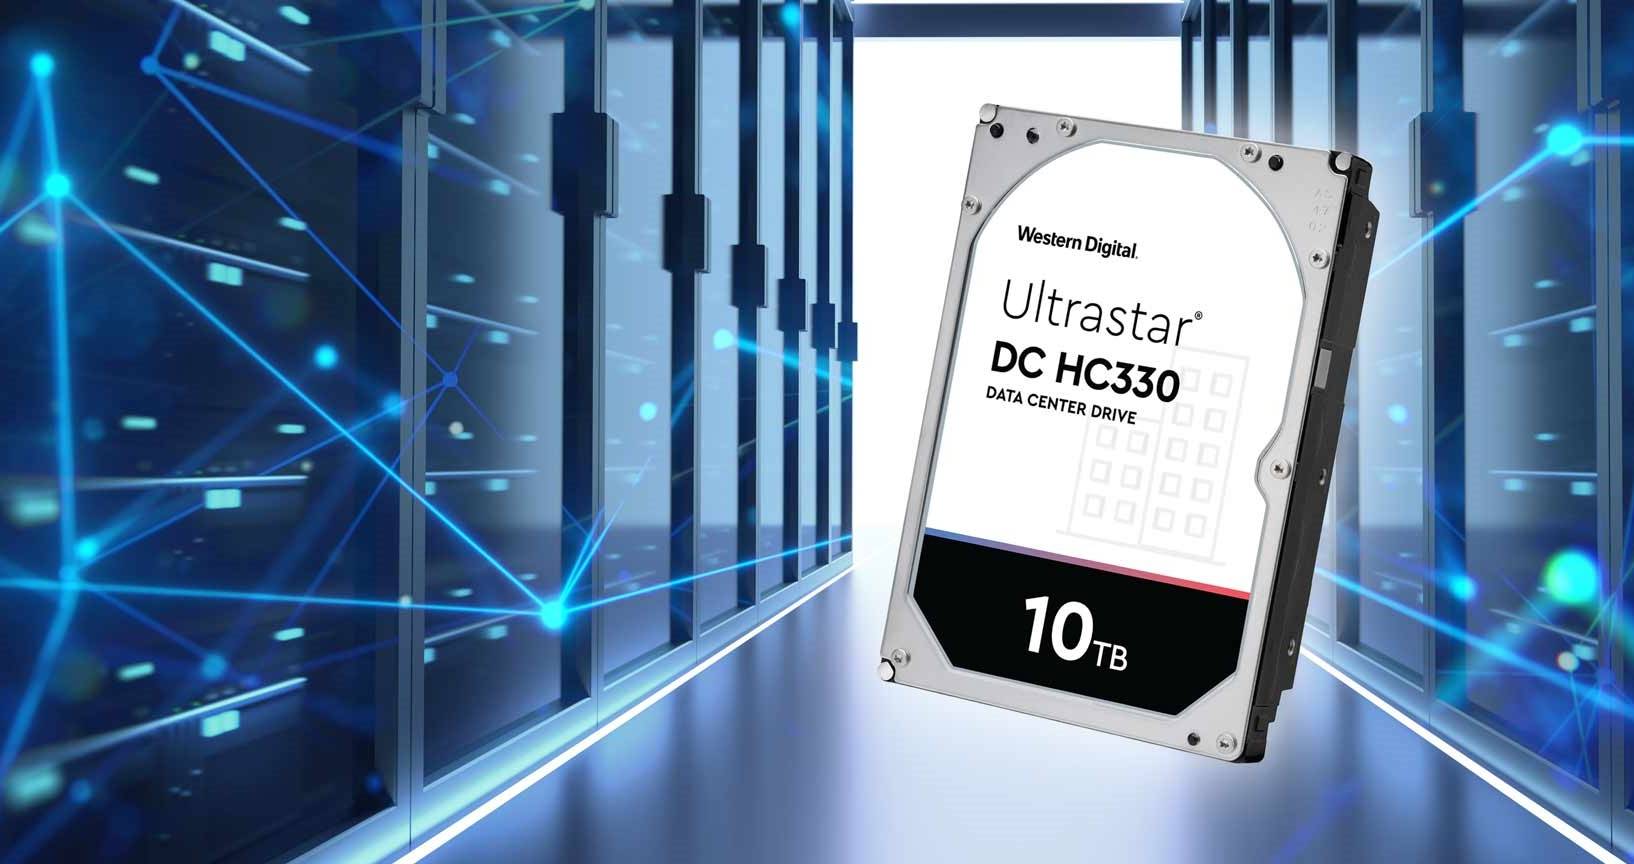 هارد دیسک 10 ترابایتی Ultrastar DC HC330 وسترن دیجیتال معرفی شد